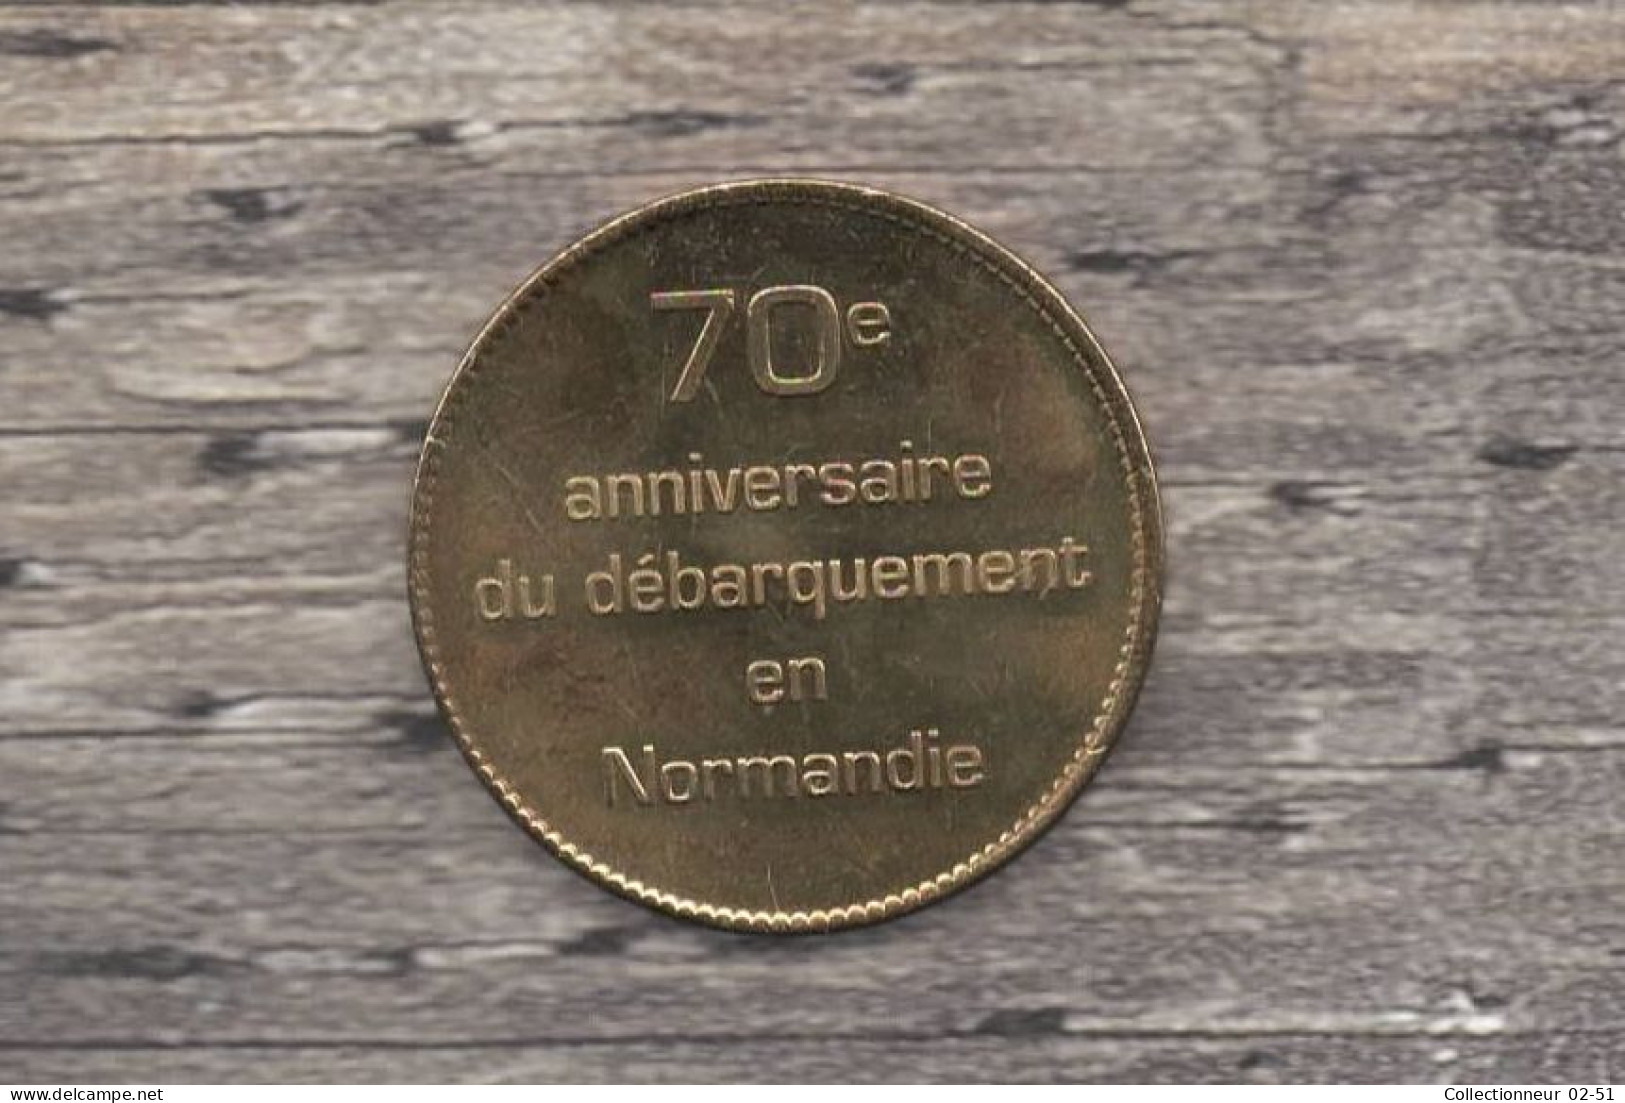 Arthus Bertrand : D-Day 70ème Anniversaire Du Débarquement En Normandie (Arromanches) - 2012 - 2012